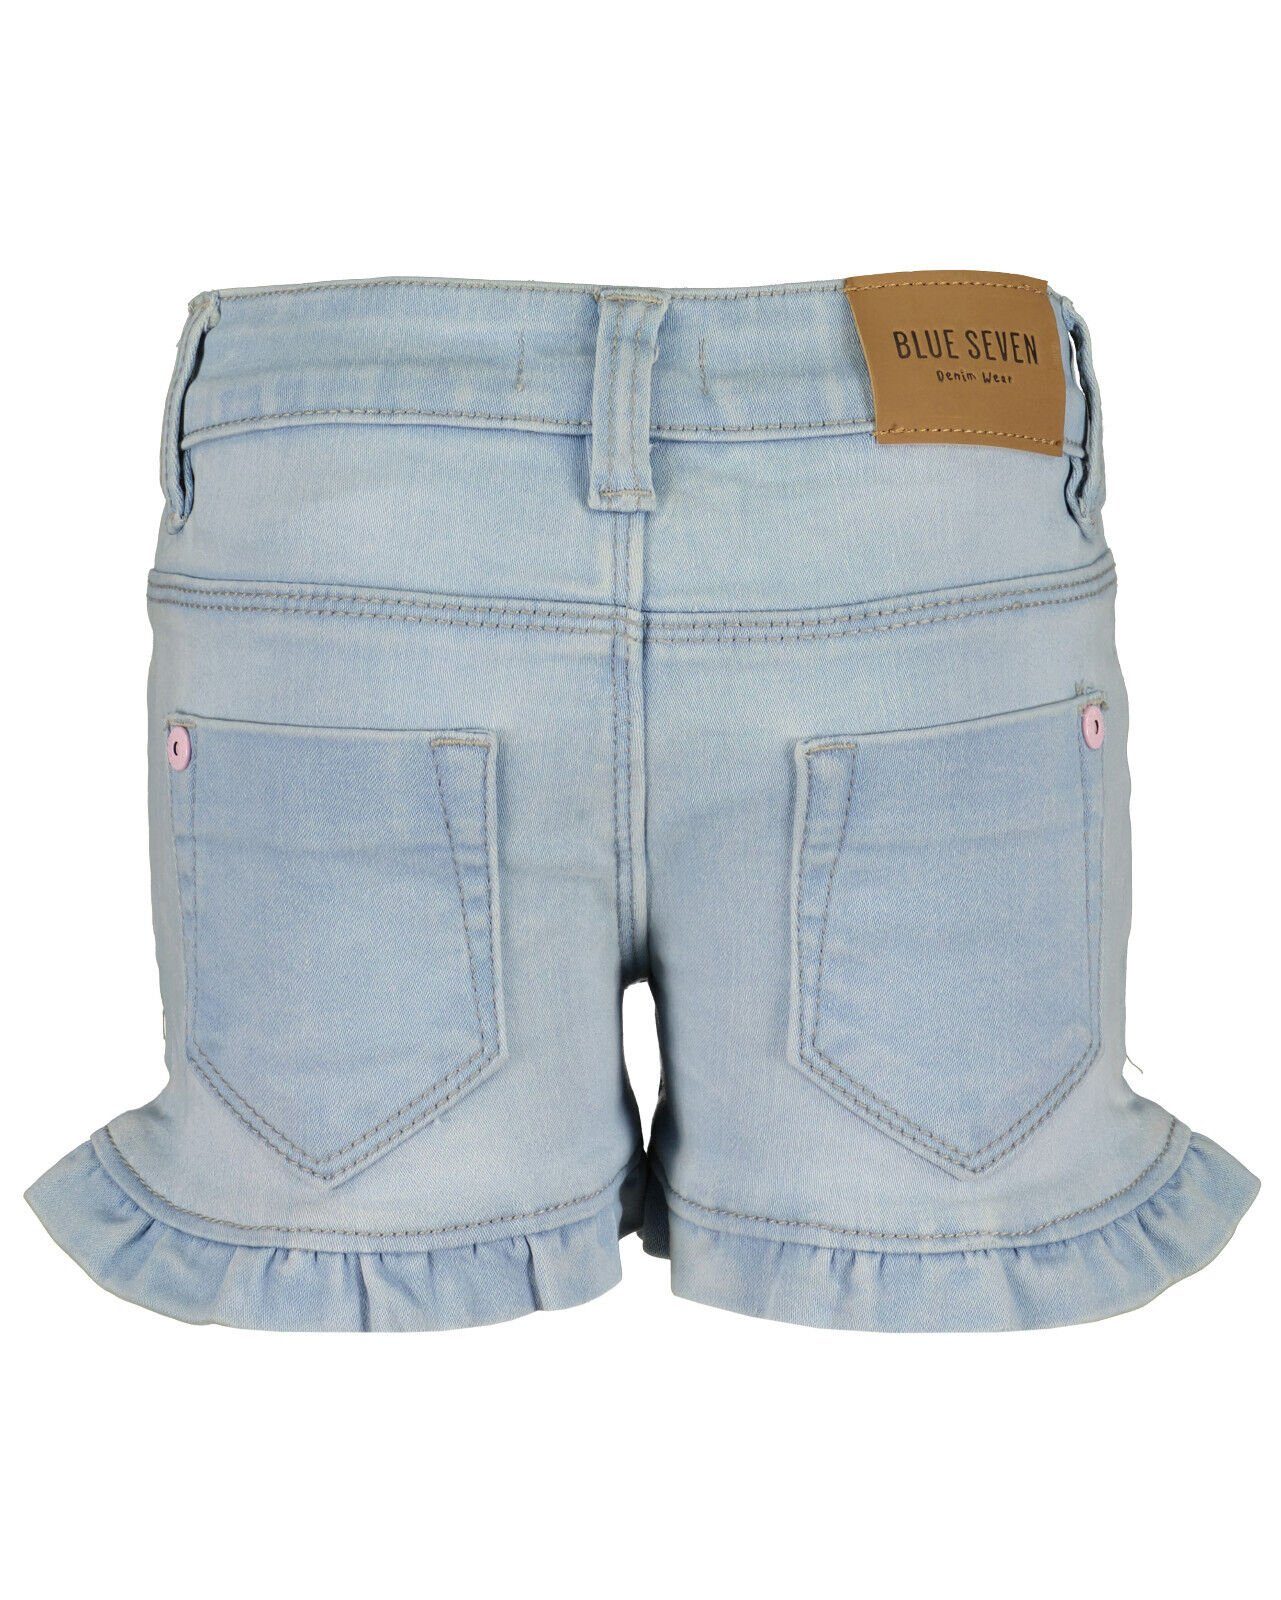 Mädchen Jeans Shorts Shorts Blue Pailletten Seven® Blue Seven